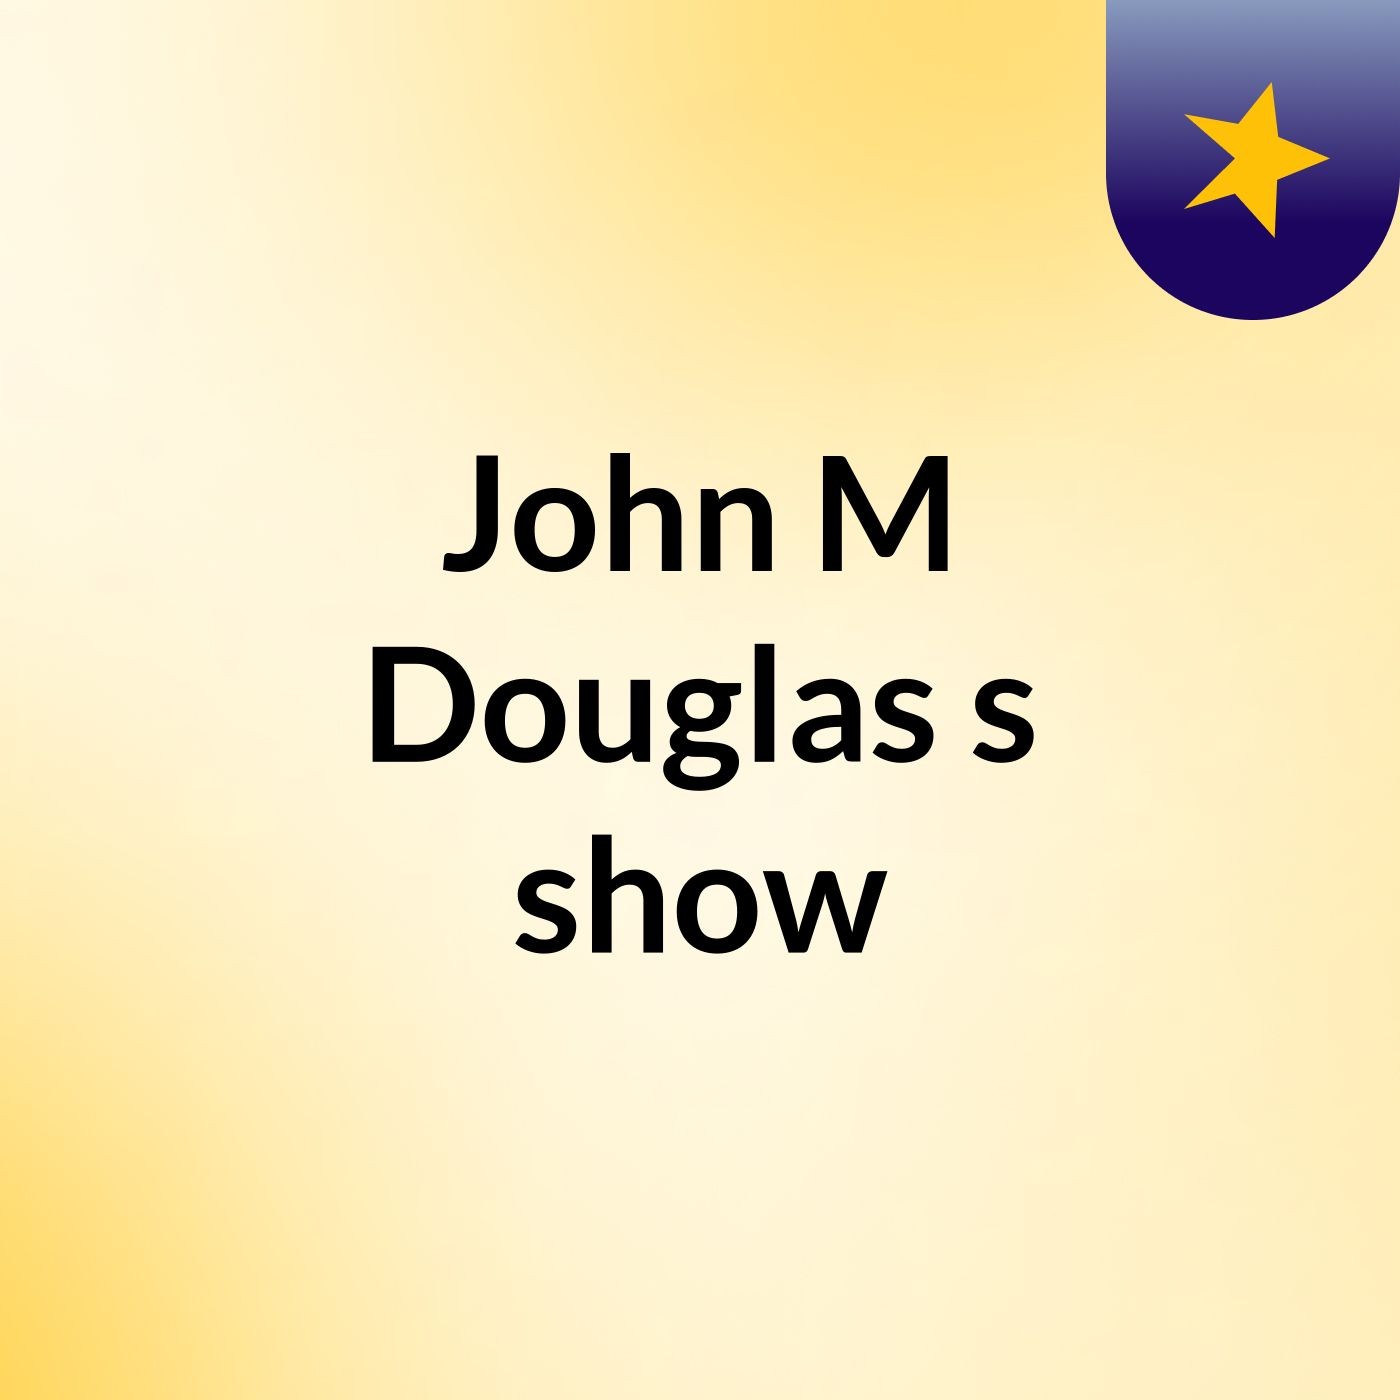 John M Douglas's show